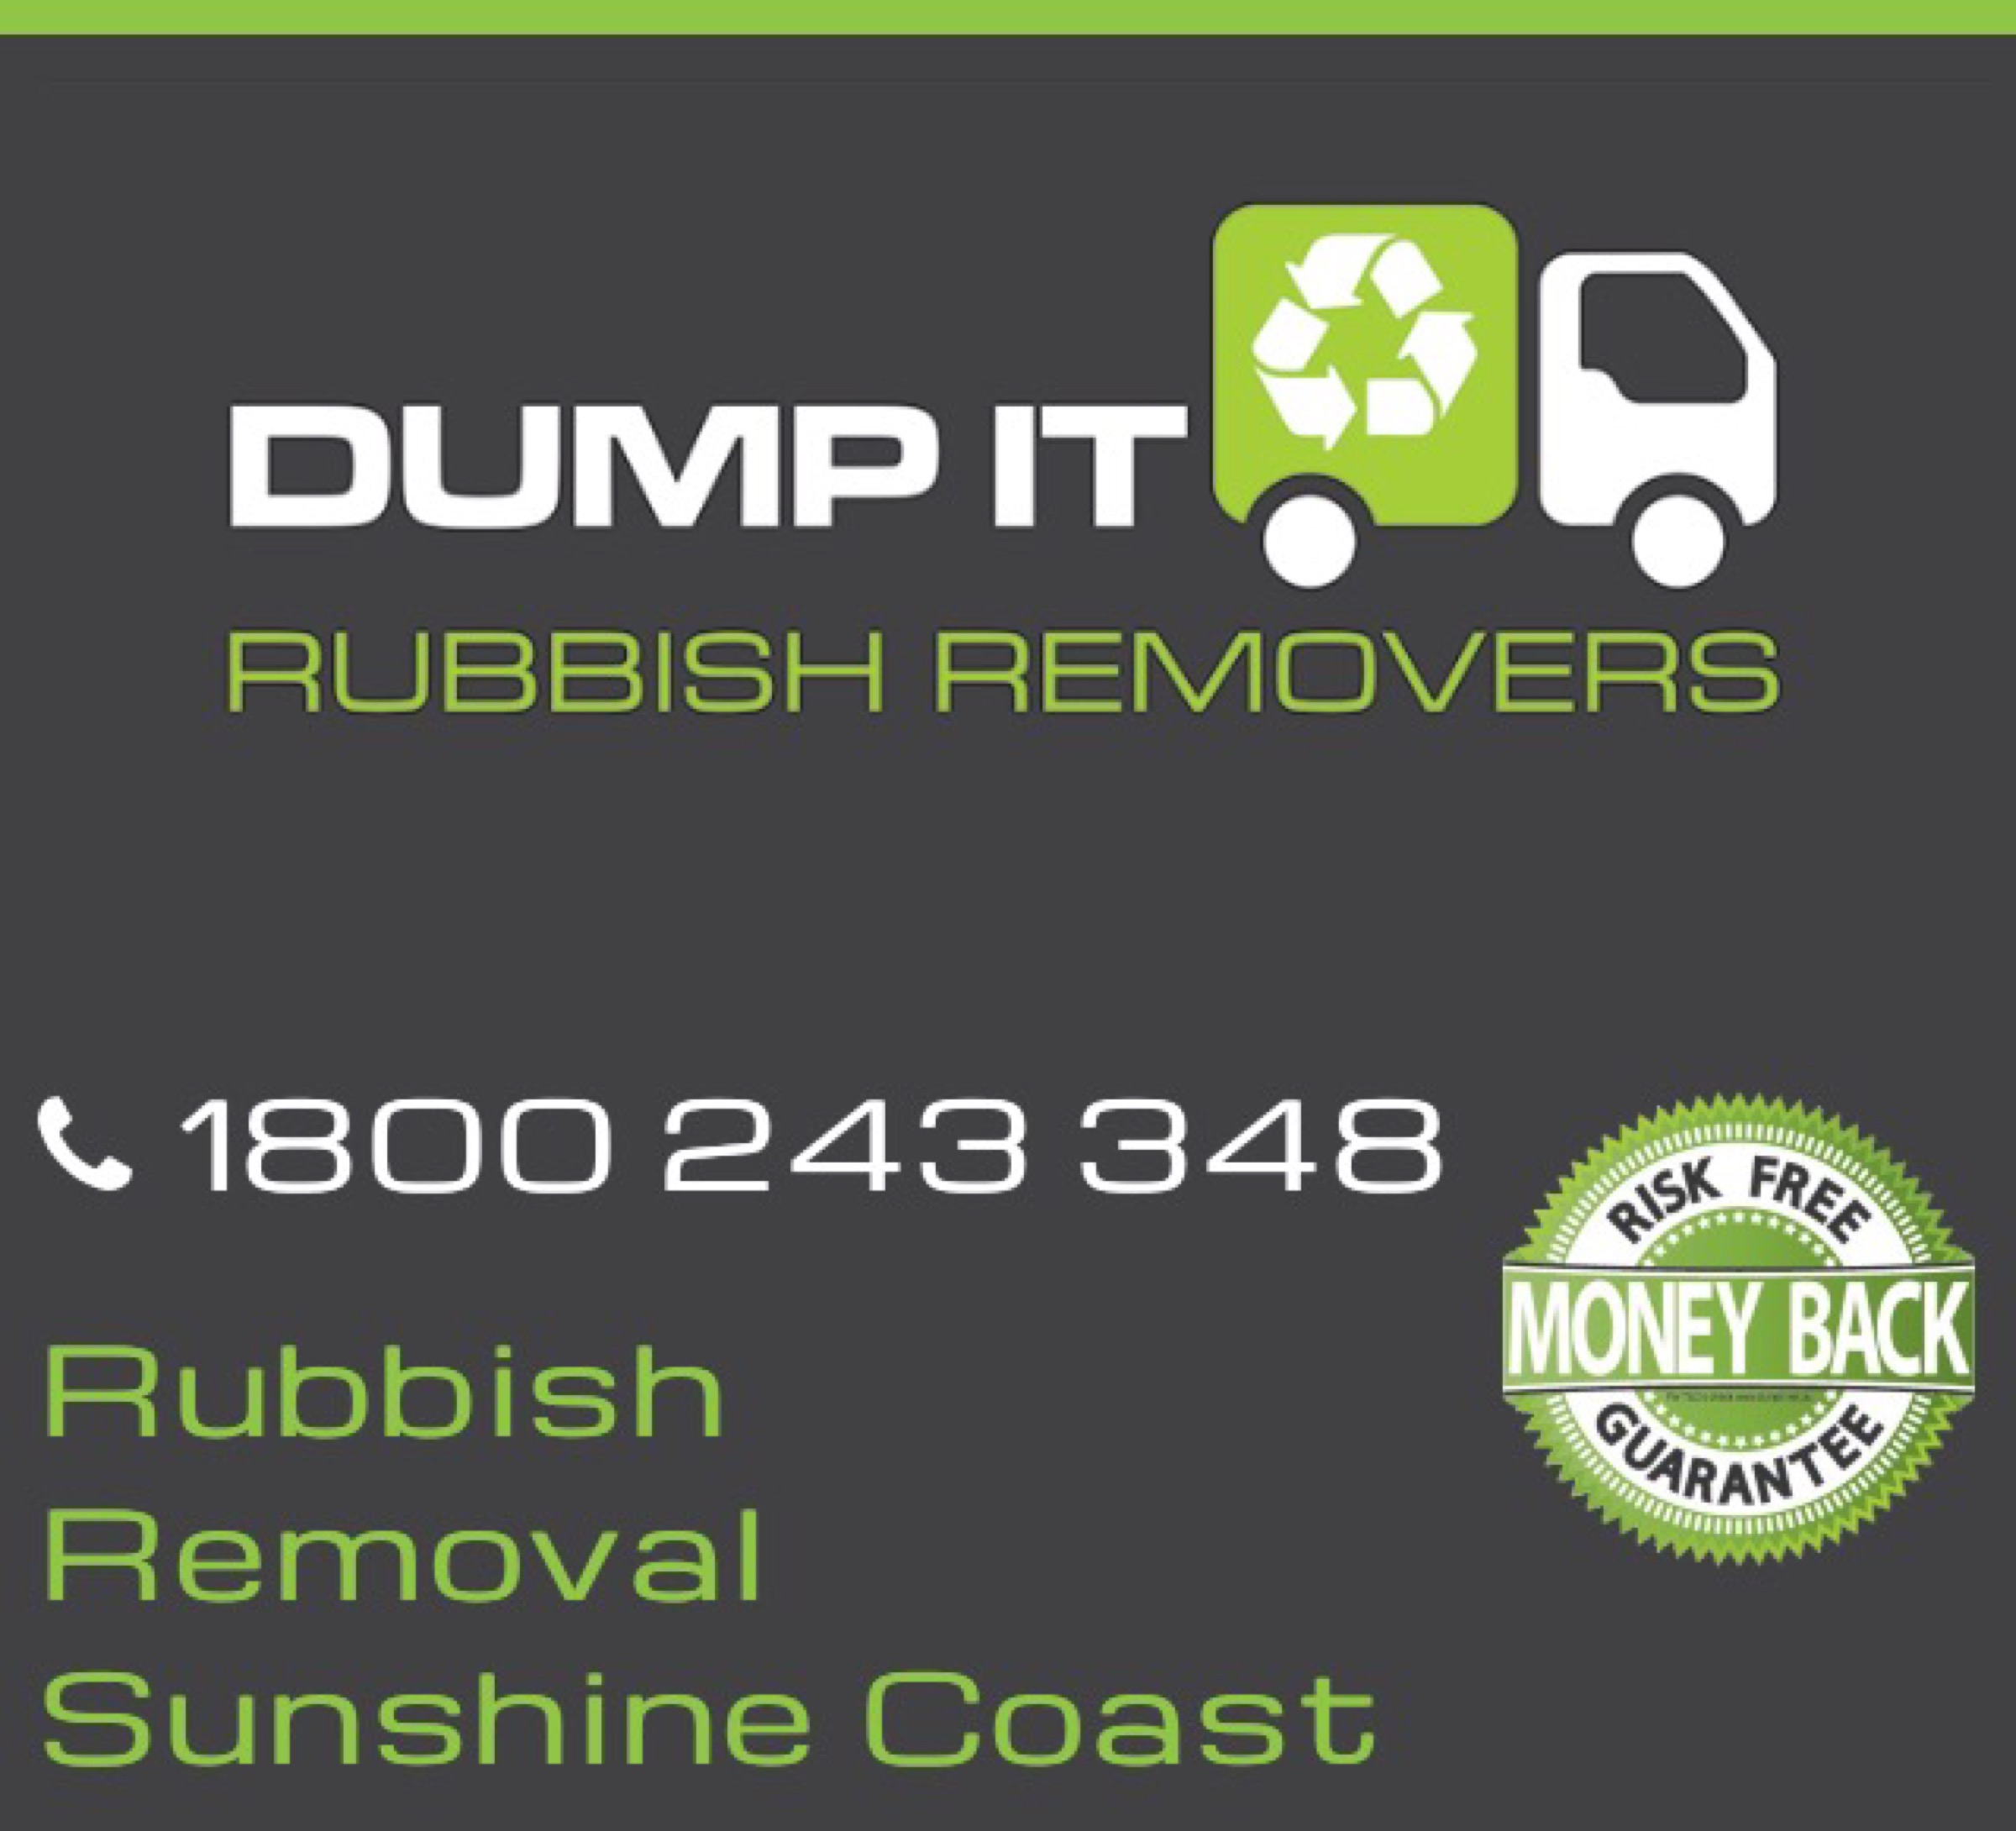 Dump It Rubbish Removers